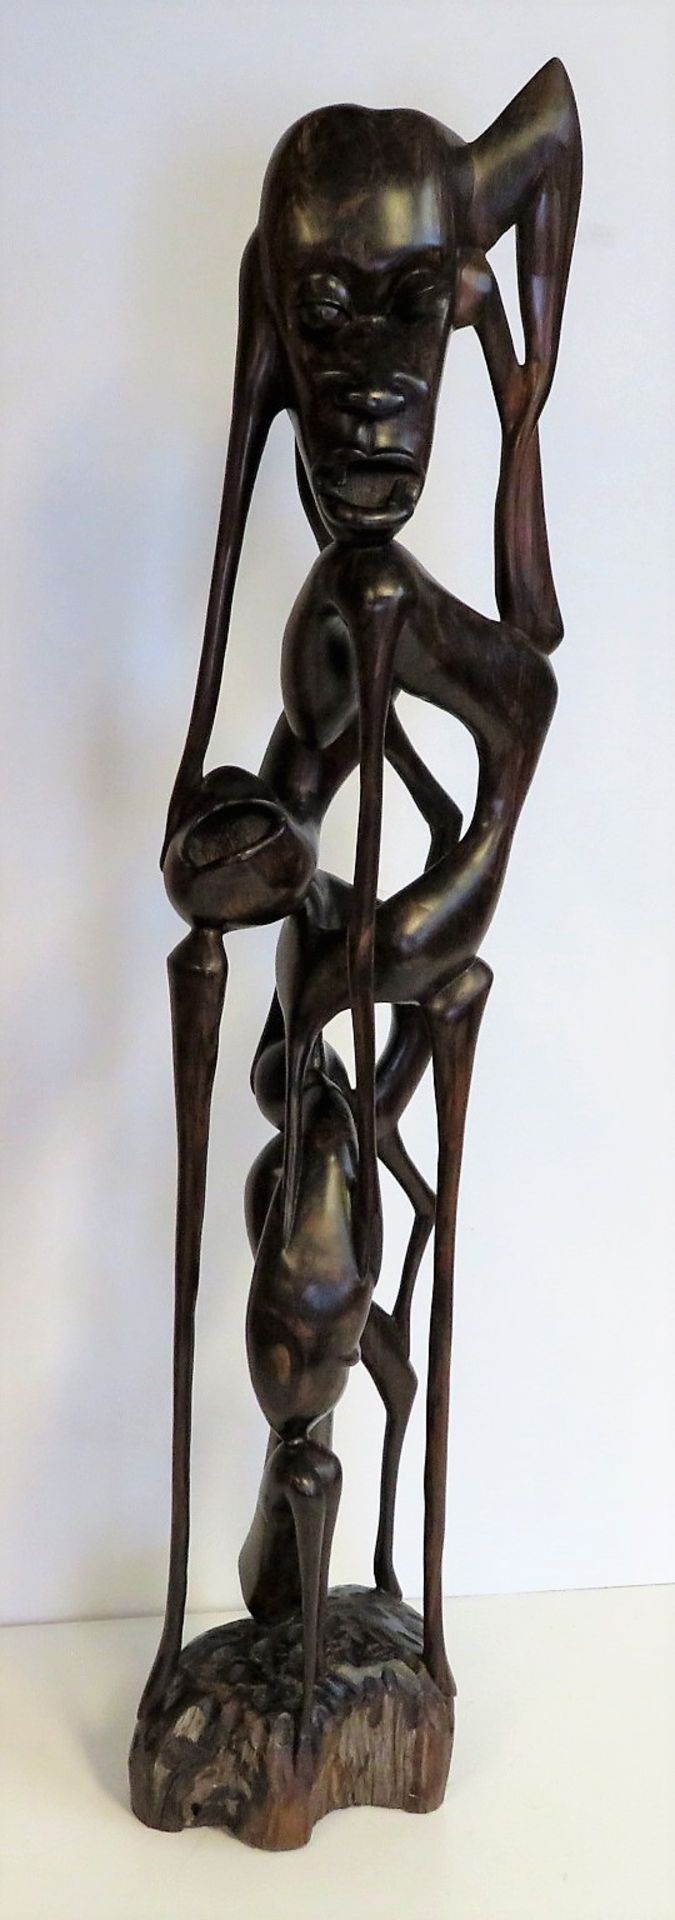 Ahnenfigur, Afrika, Makonde, Ebenholz geschnitzt, 89 x 21 x 15 cm.